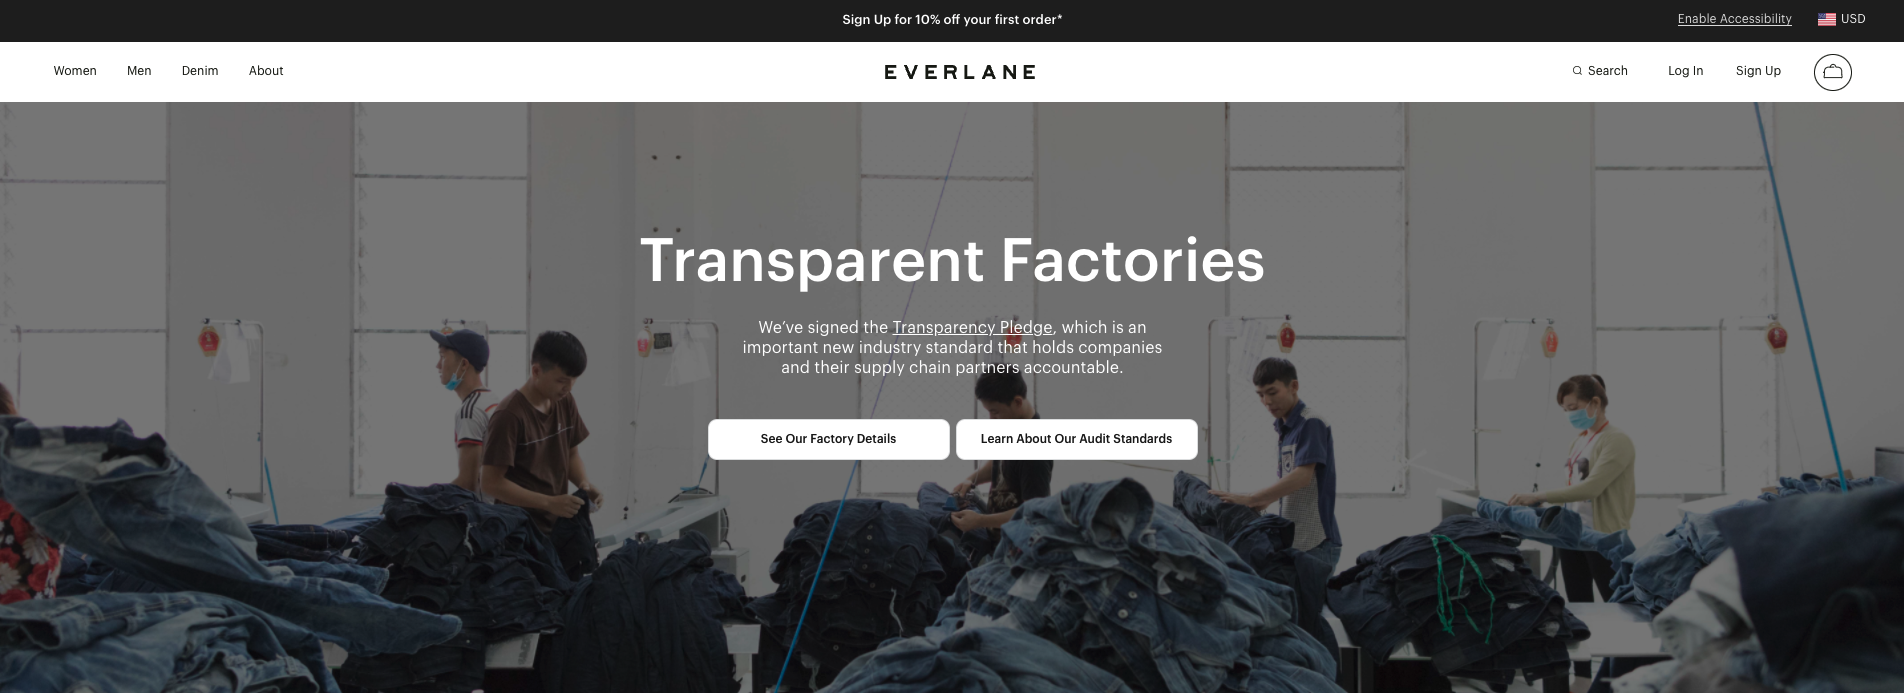 Everlane's transparent factories